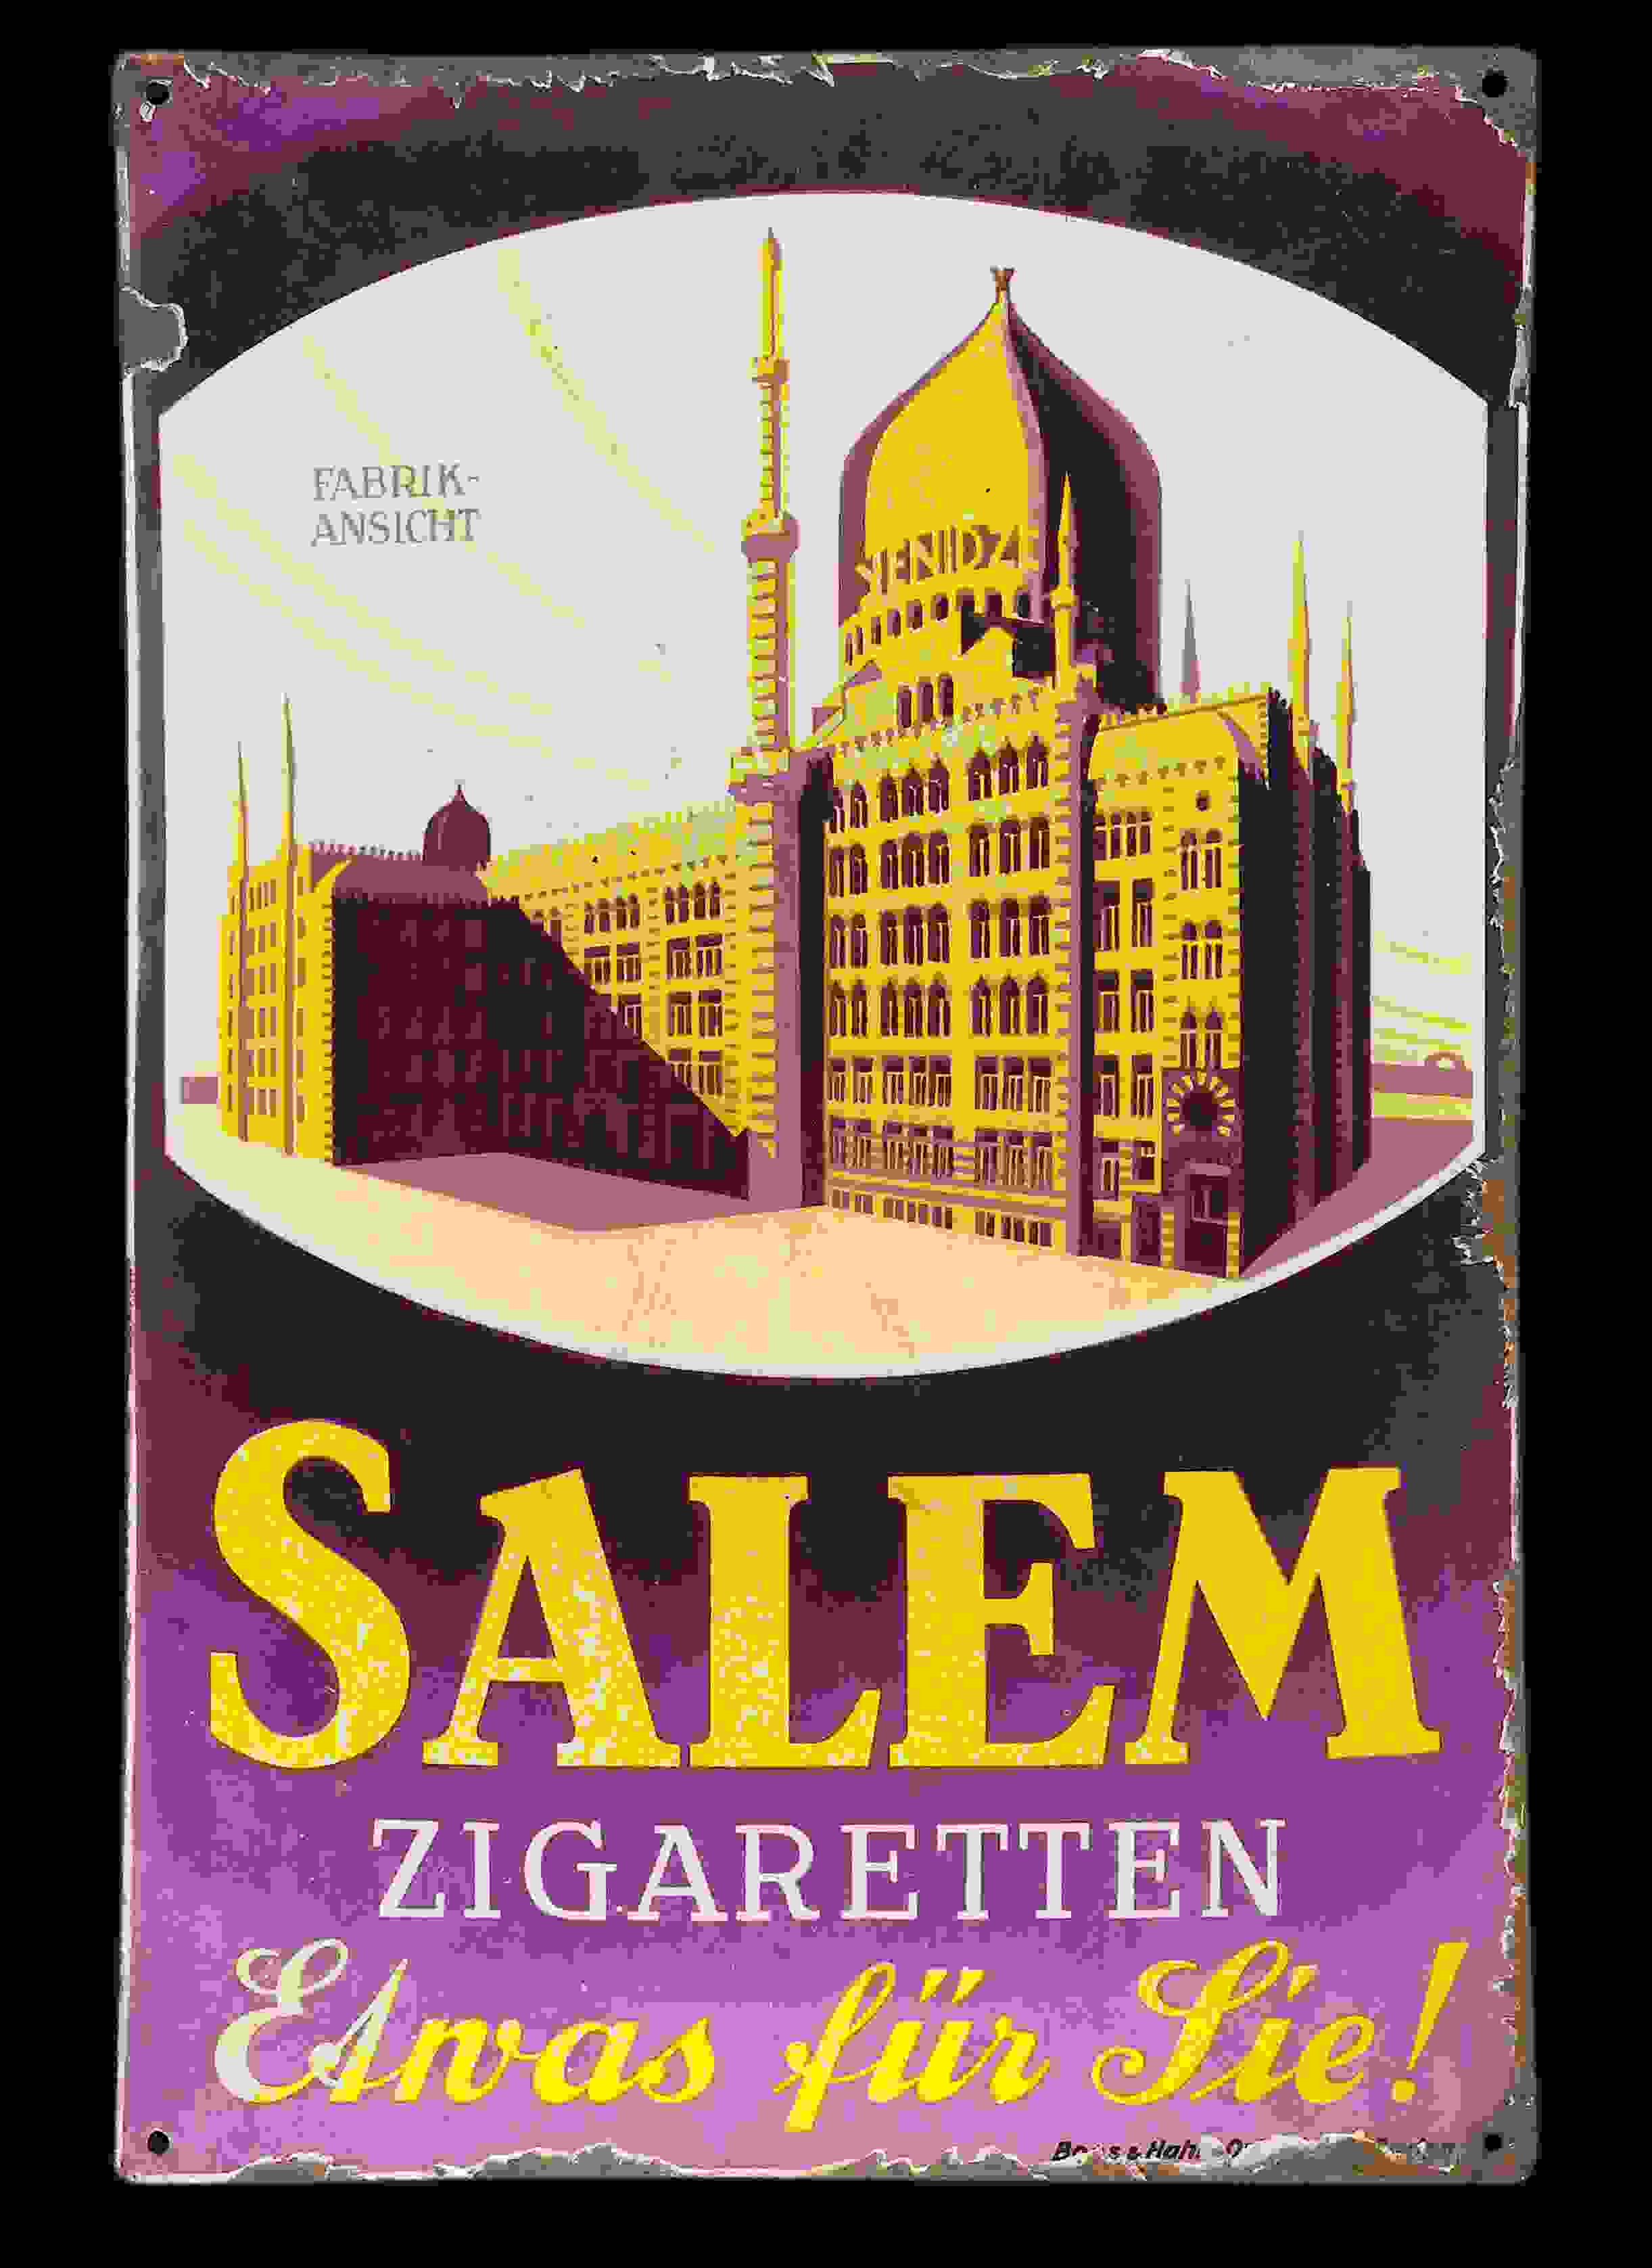 Salem 